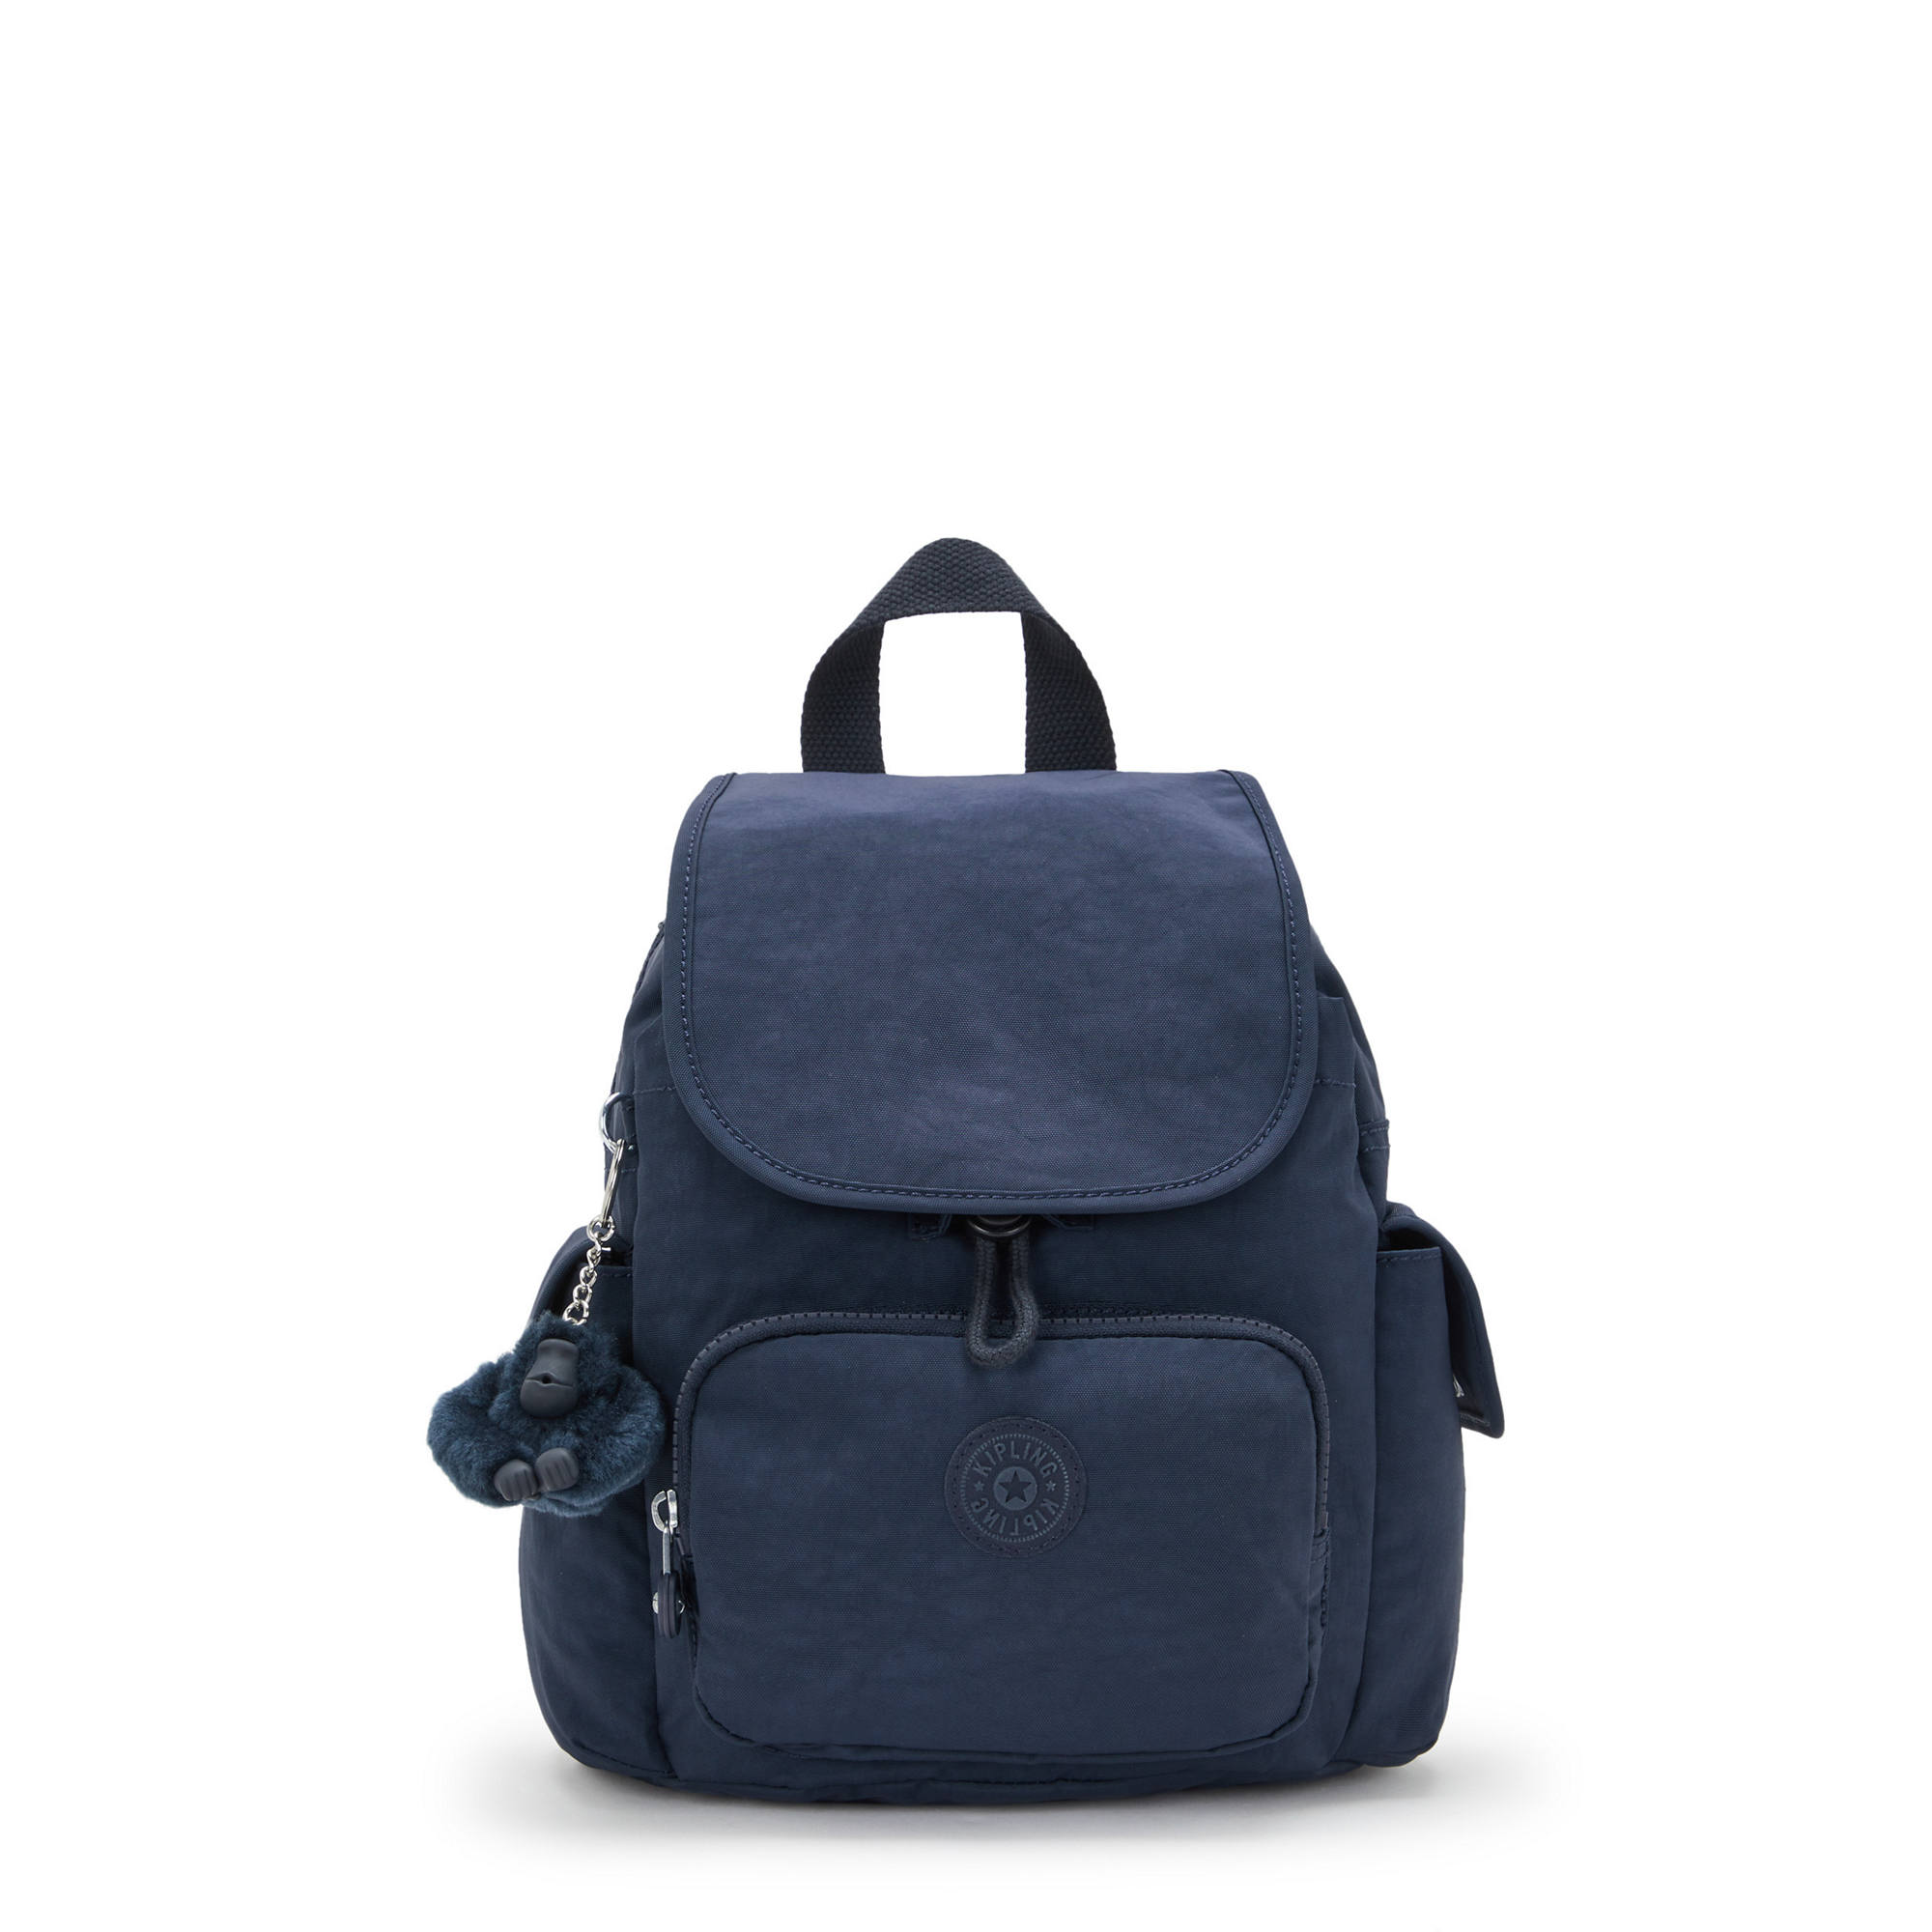 Kipling City Pack Backpack Fashion Water Adjustable | eBay